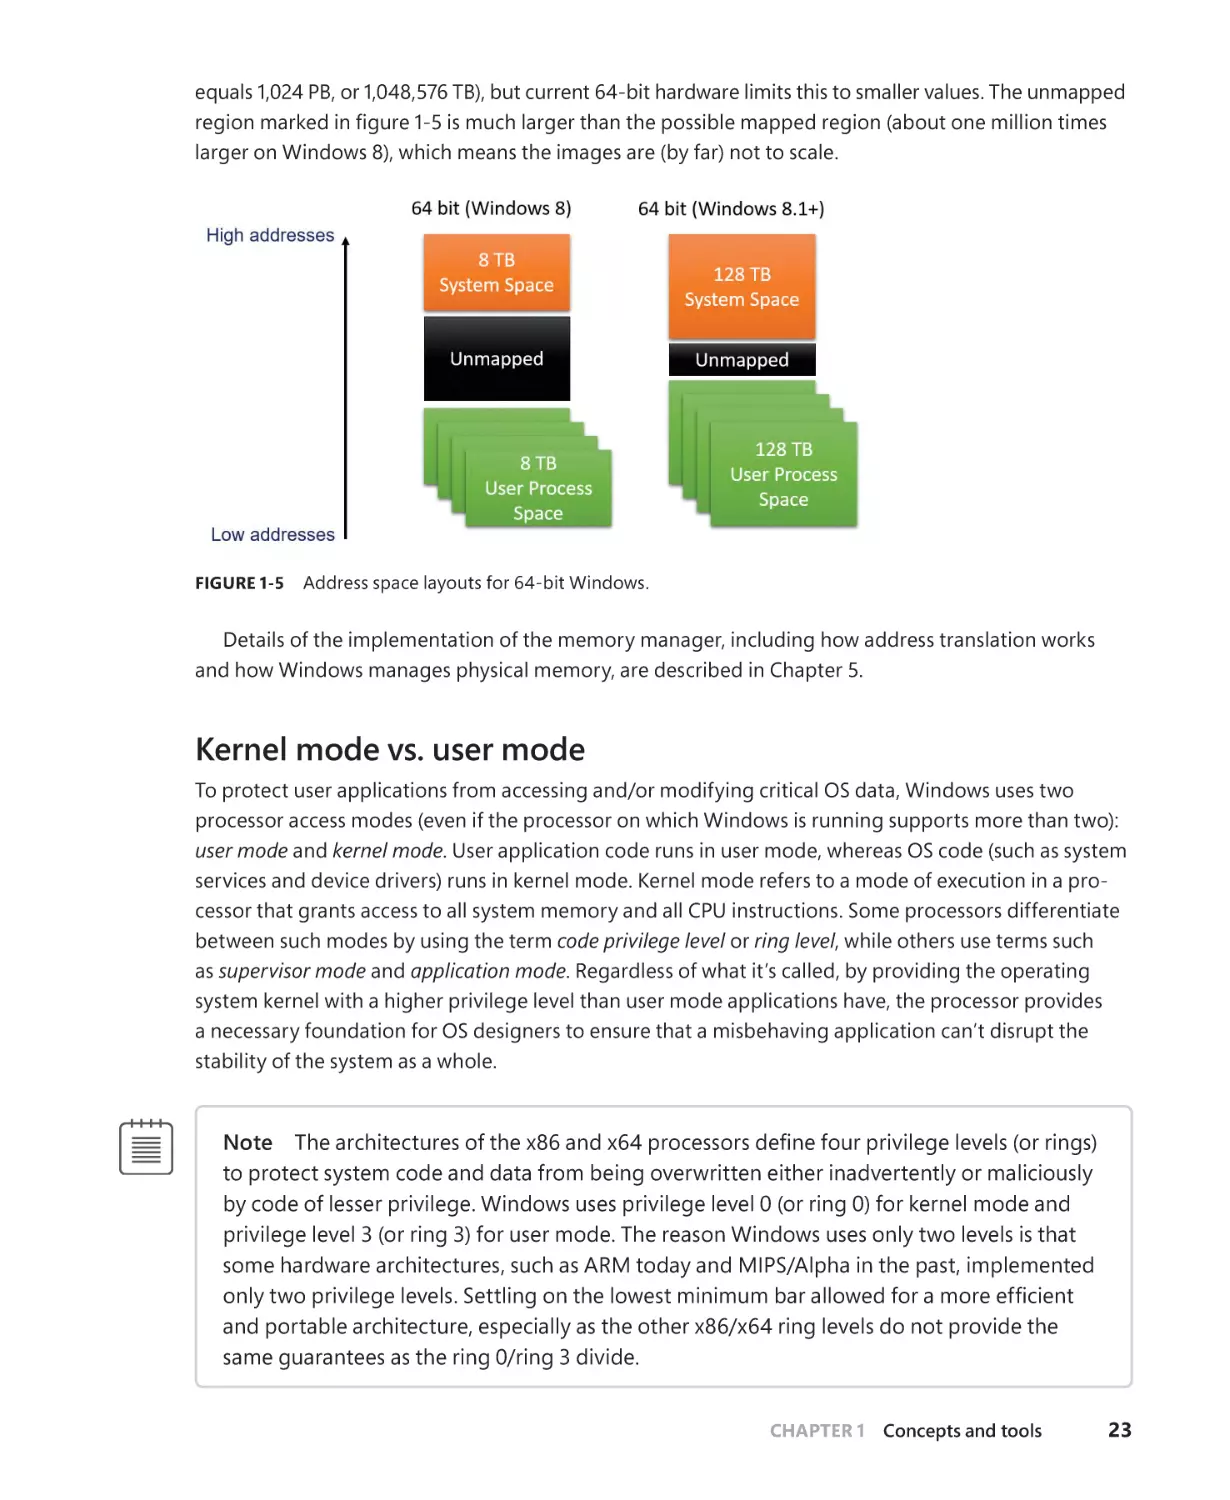 Kernel mode vs. user mode